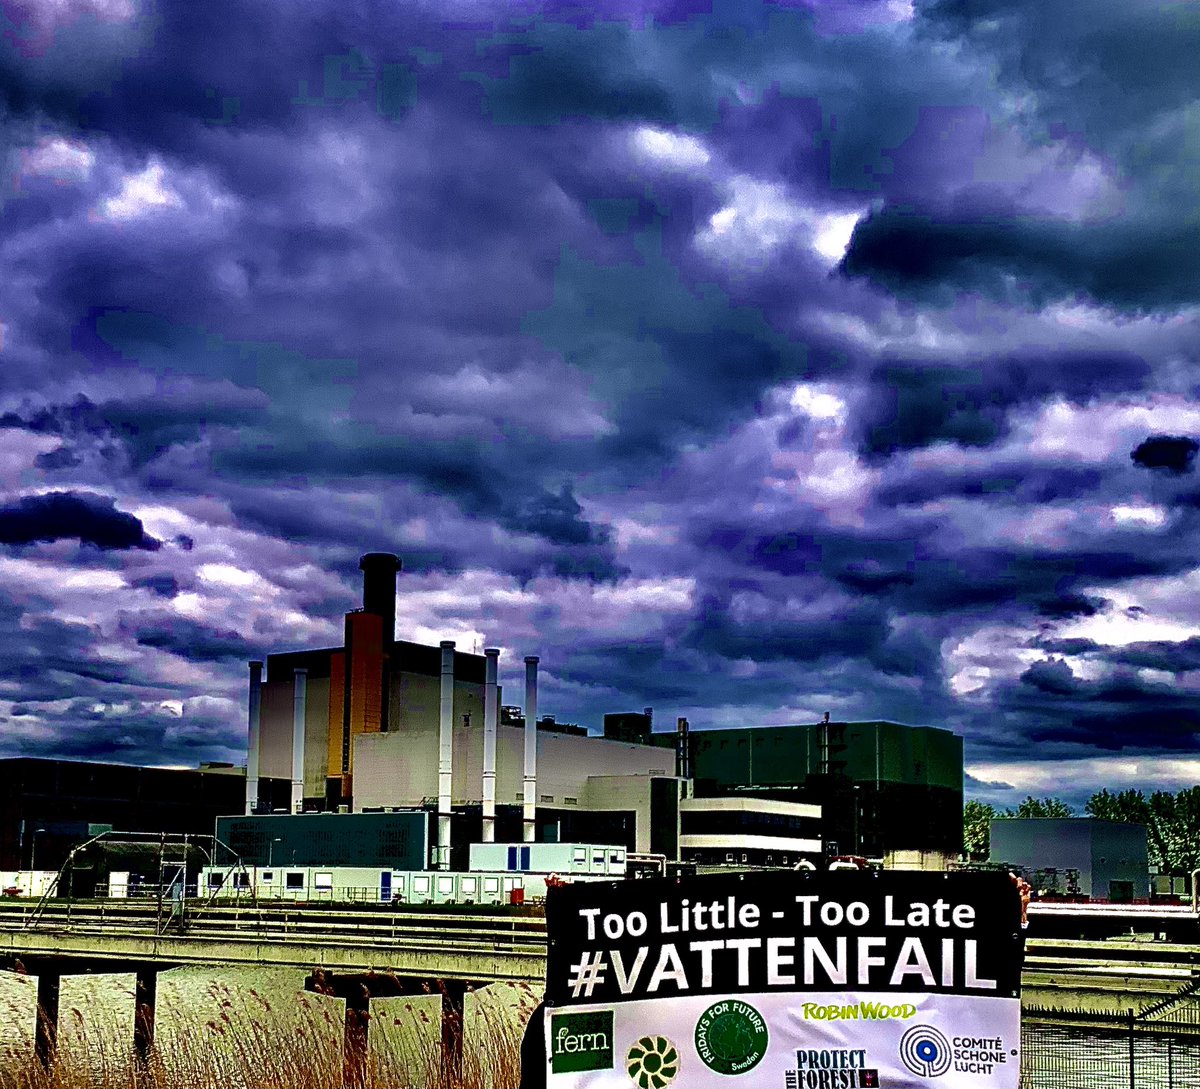 Vattenfall staat er weer gekleurd op

#vattenfail #biomass #ecocide @VattenfallGroup